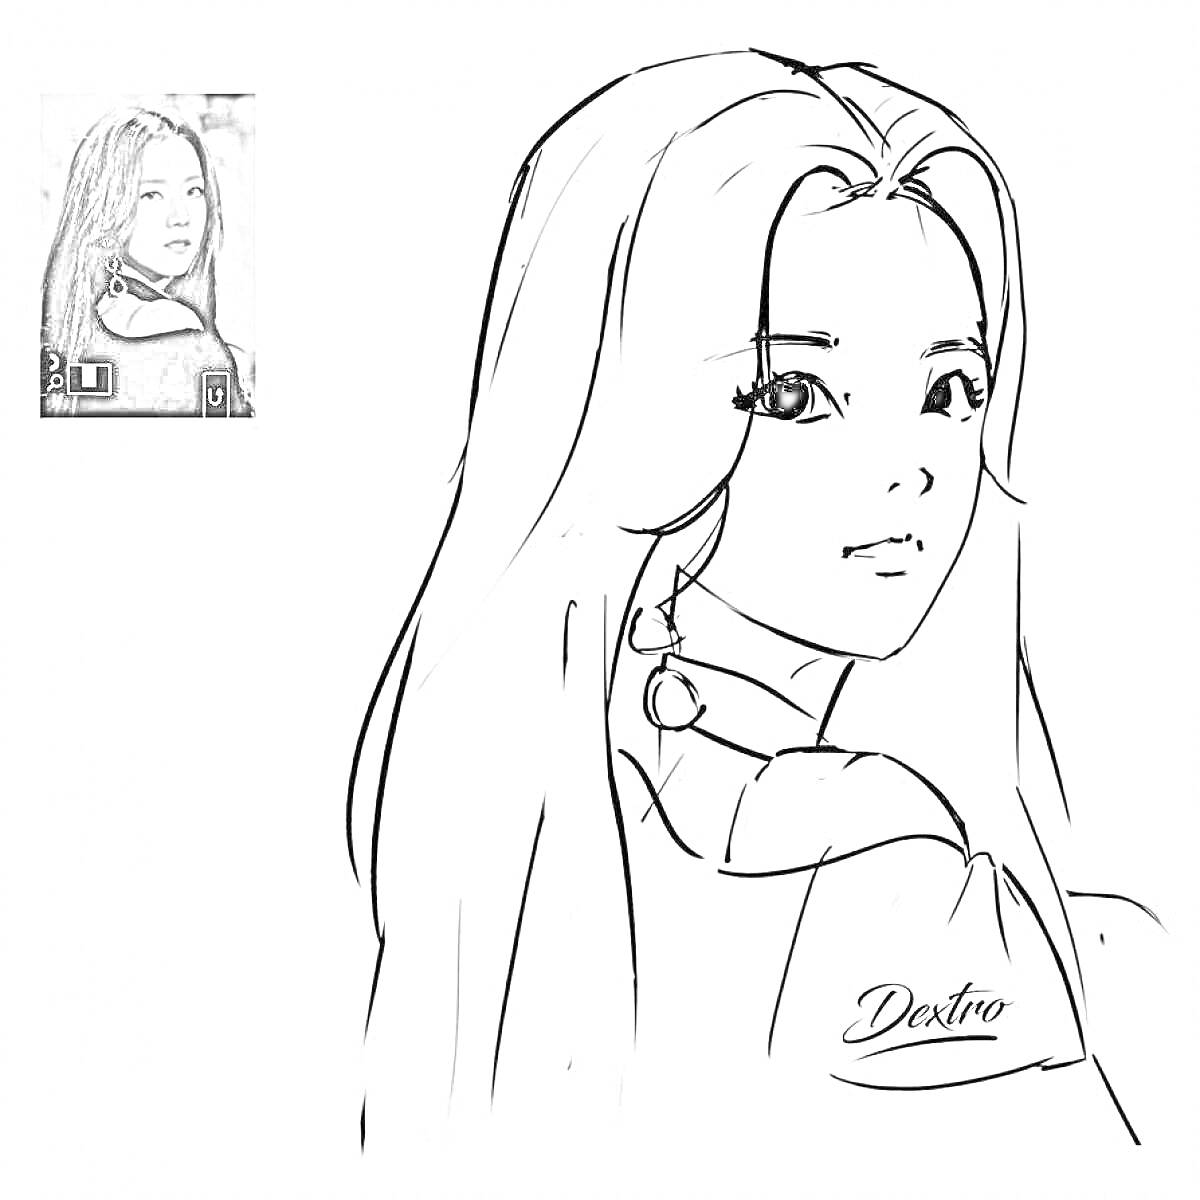 РаскраскаЧёрно-белое изображение девушки с длинными волосами в профиль с серьгами, фото для раскраски, маленькое фото на фоне.